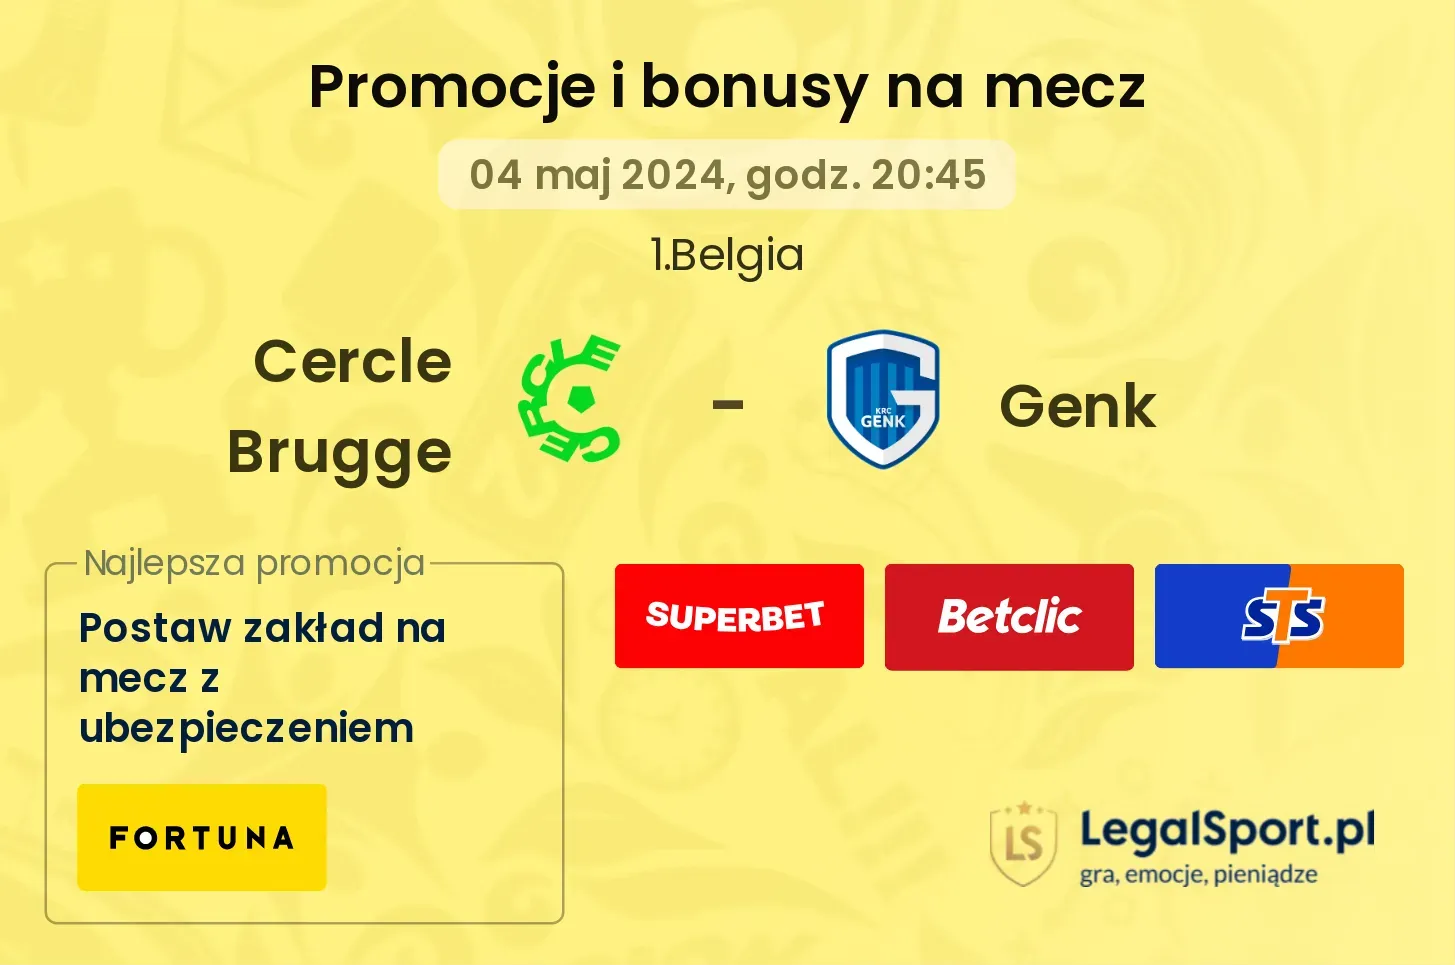 Cercle Brugge - Genk promocje bonusy na mecz